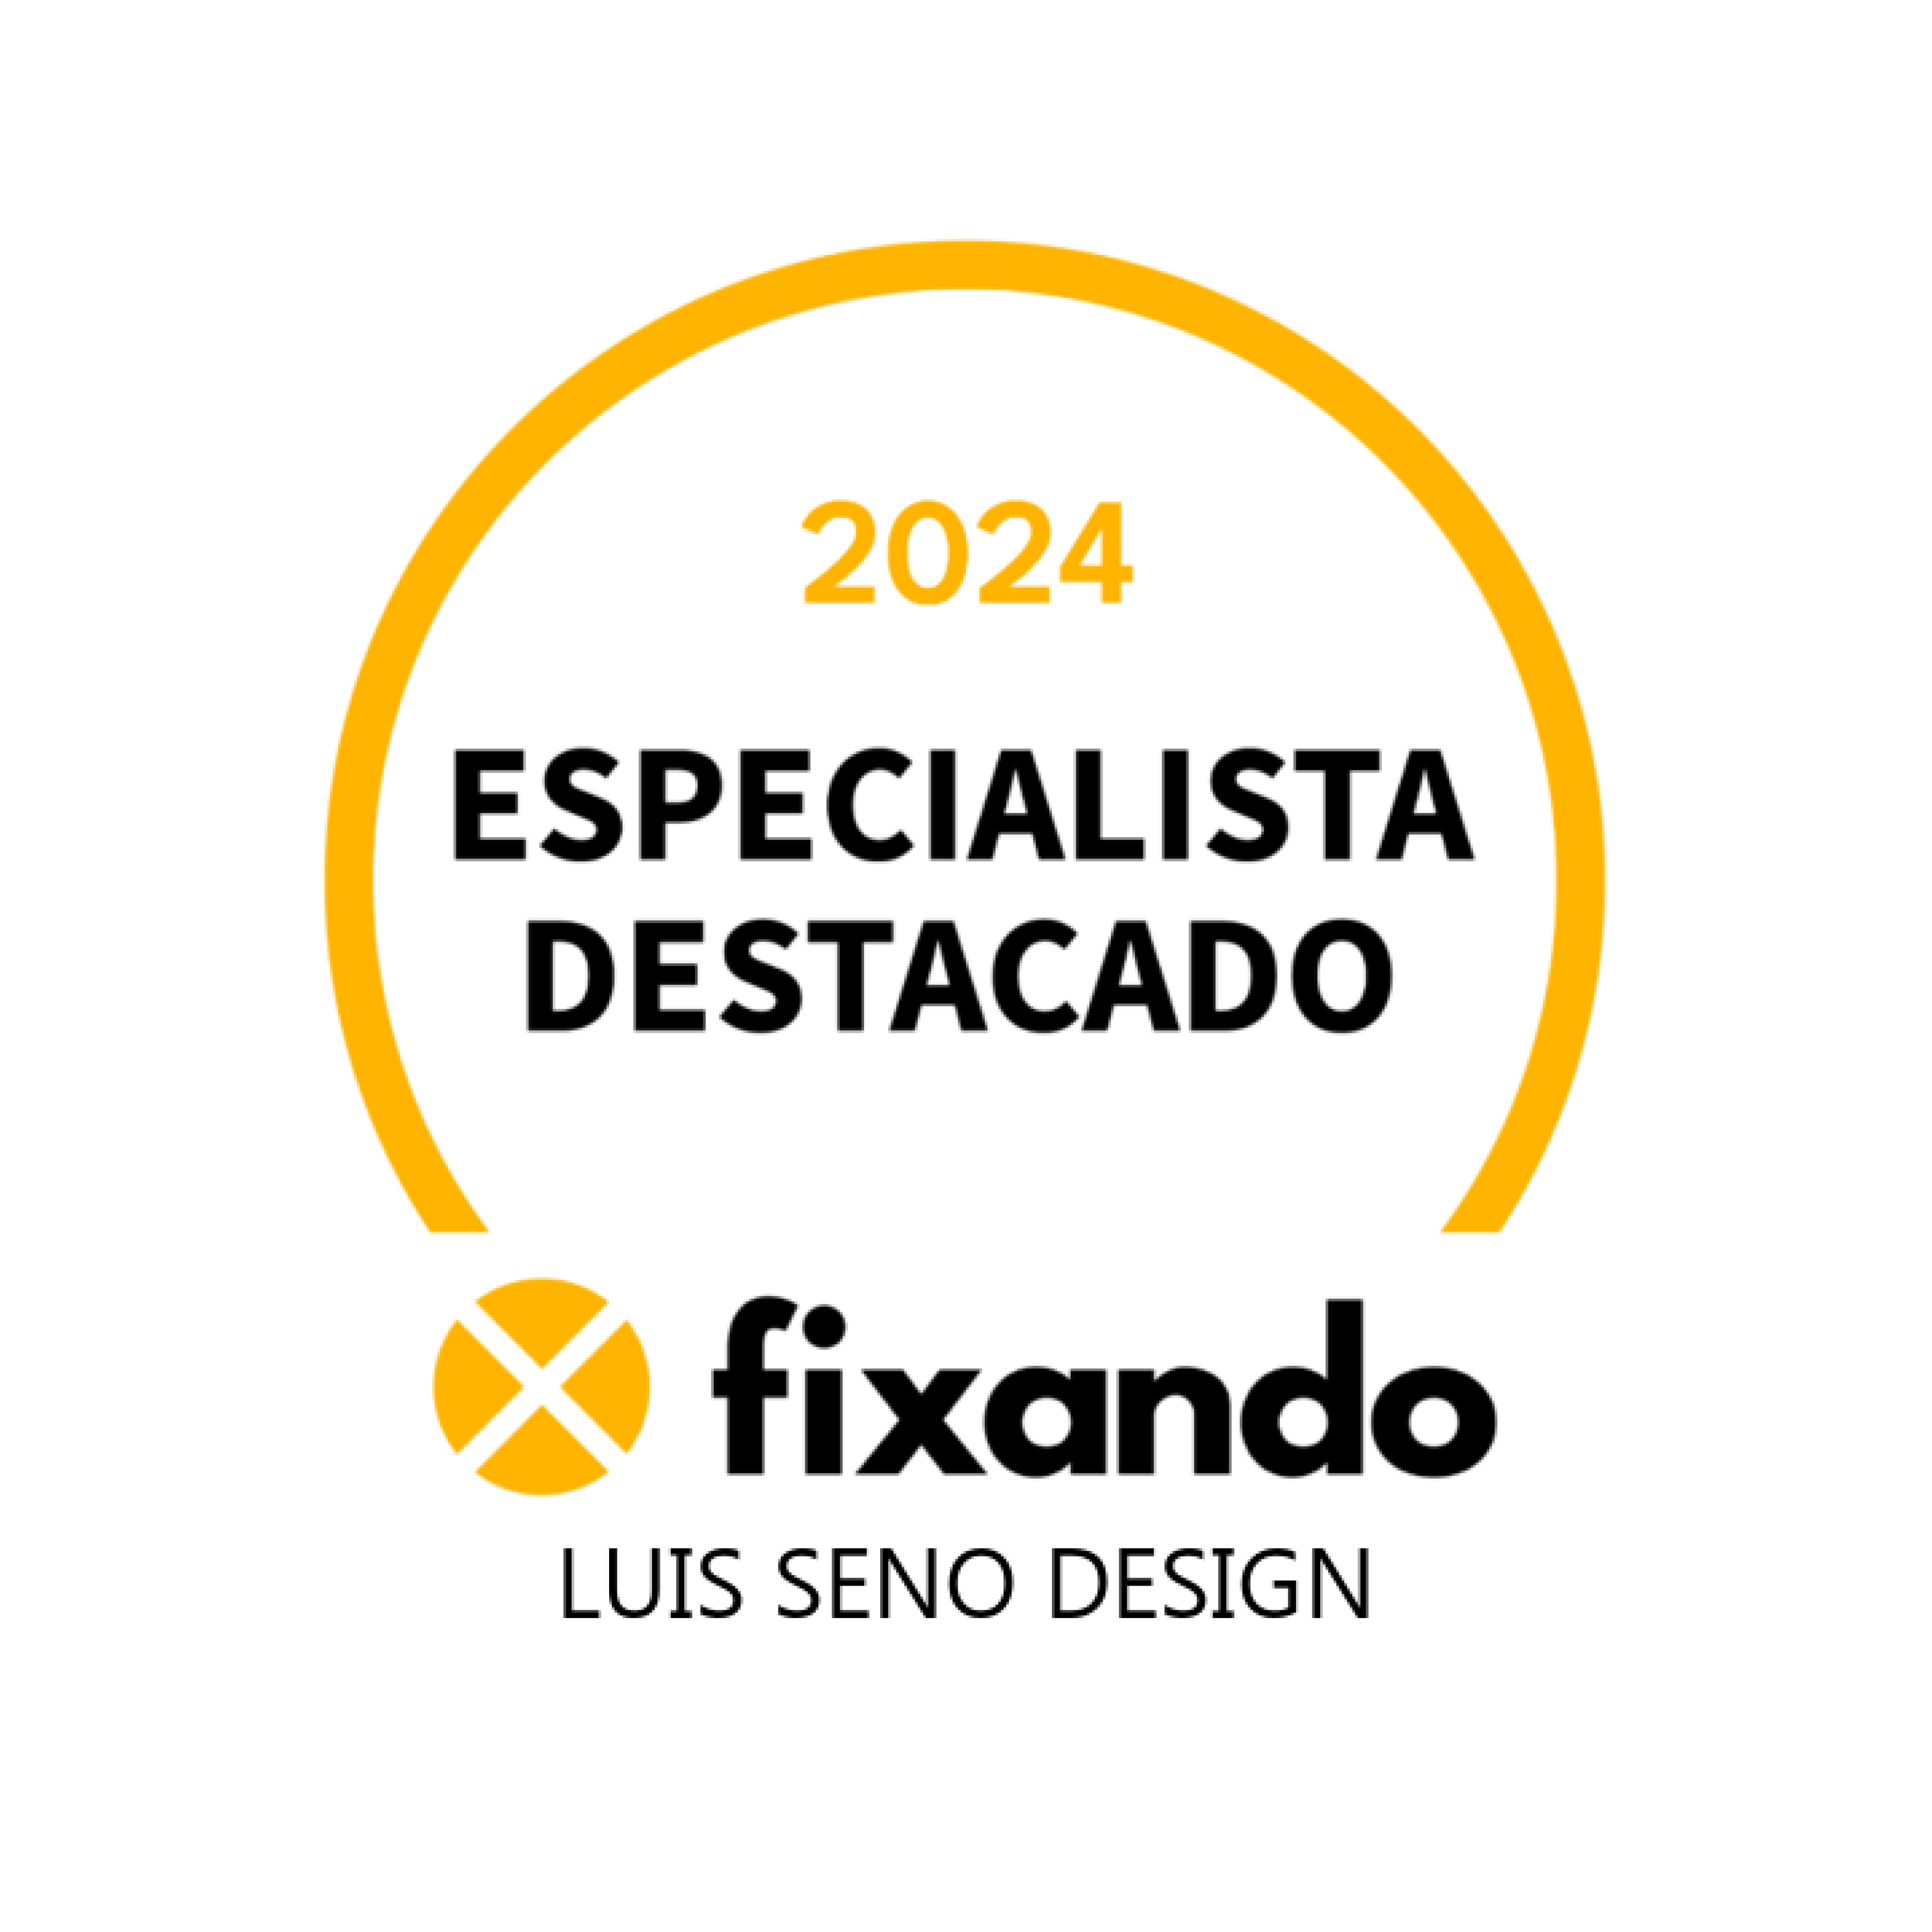 Especialista Destacado 2024 - luis seno design